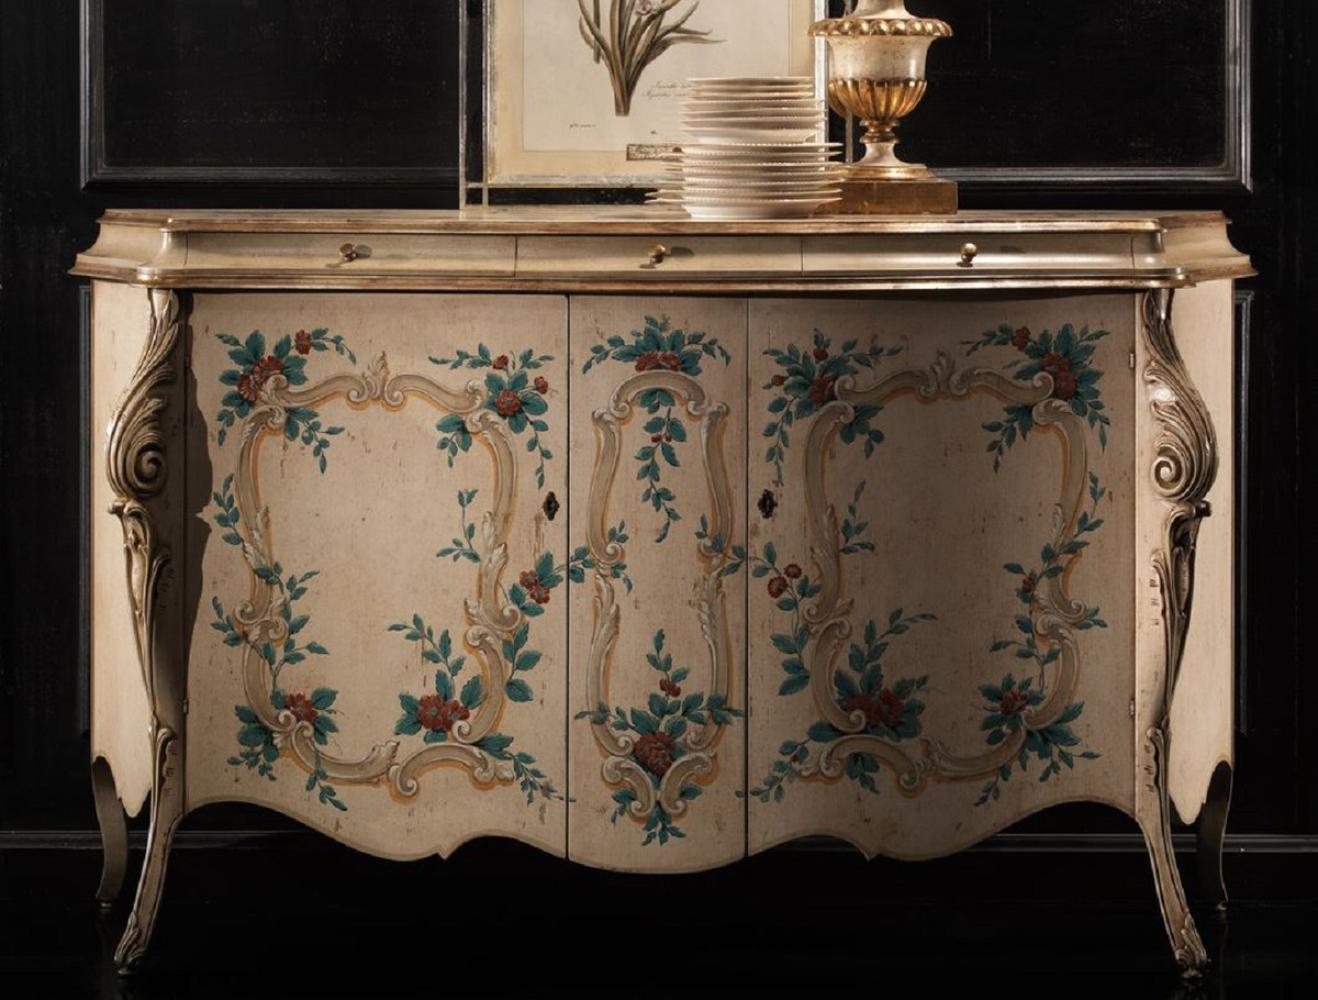 Casa Padrino Luxus Barock Sideboard Beige / Mehrfarbig - Handgefertigter Schrank mit 3 Schubladen und 2 Türen - Luxus Möbel Möbel im Barockstil - Barock Möbel - Luxus Qualität - Made in Italy Bild 1